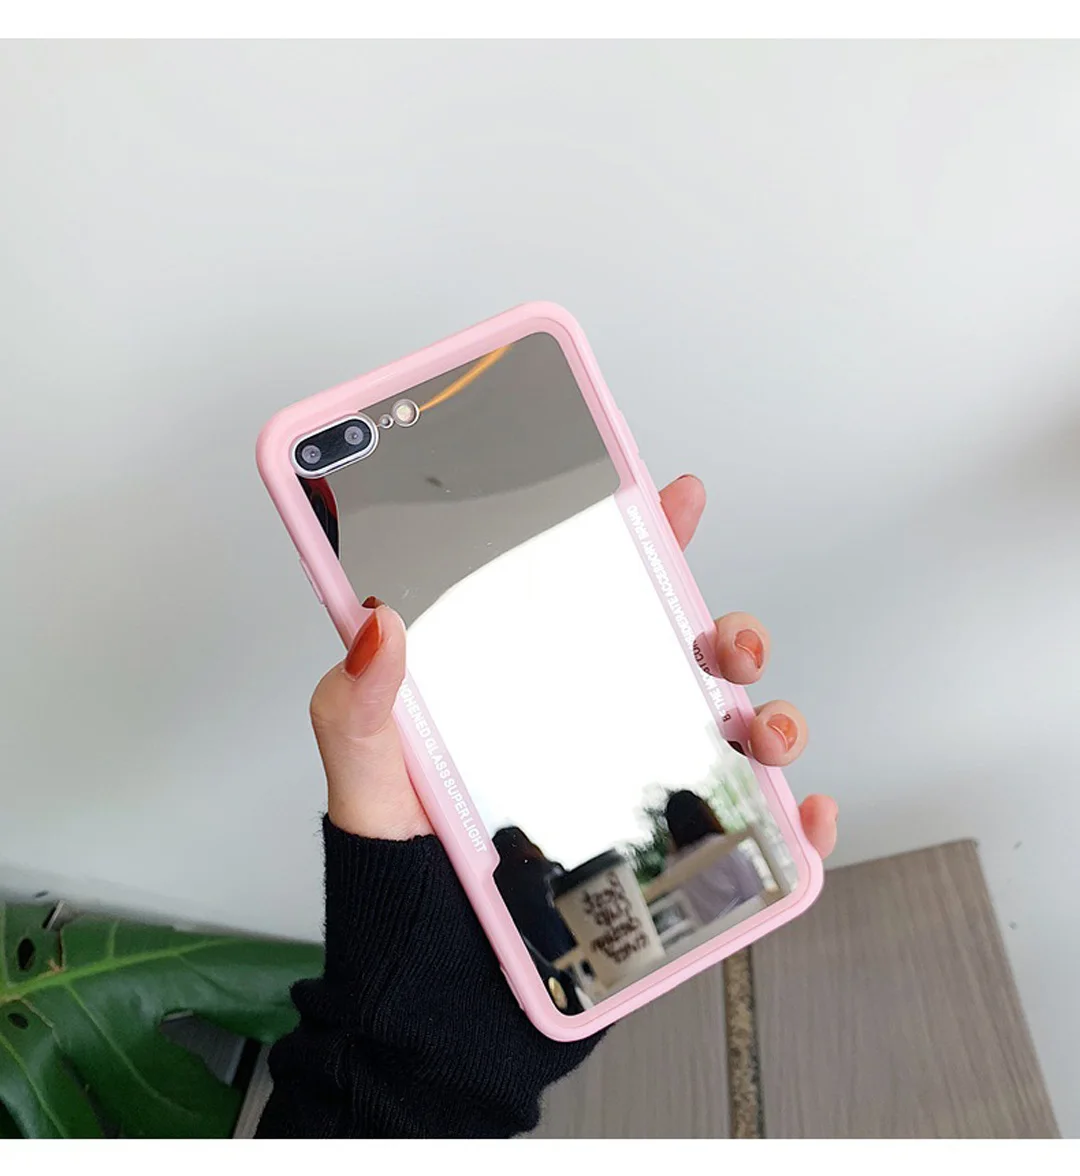 ICasiber роскошный зеркальный чехол для телефона для iPhone 7, 6, 6 S, 5, 8 Plus, милый чехол с рогом дьявола для iPhone X, XS, Max, XR, жесткий акриловый чехол на заднюю панель - Color: Pink